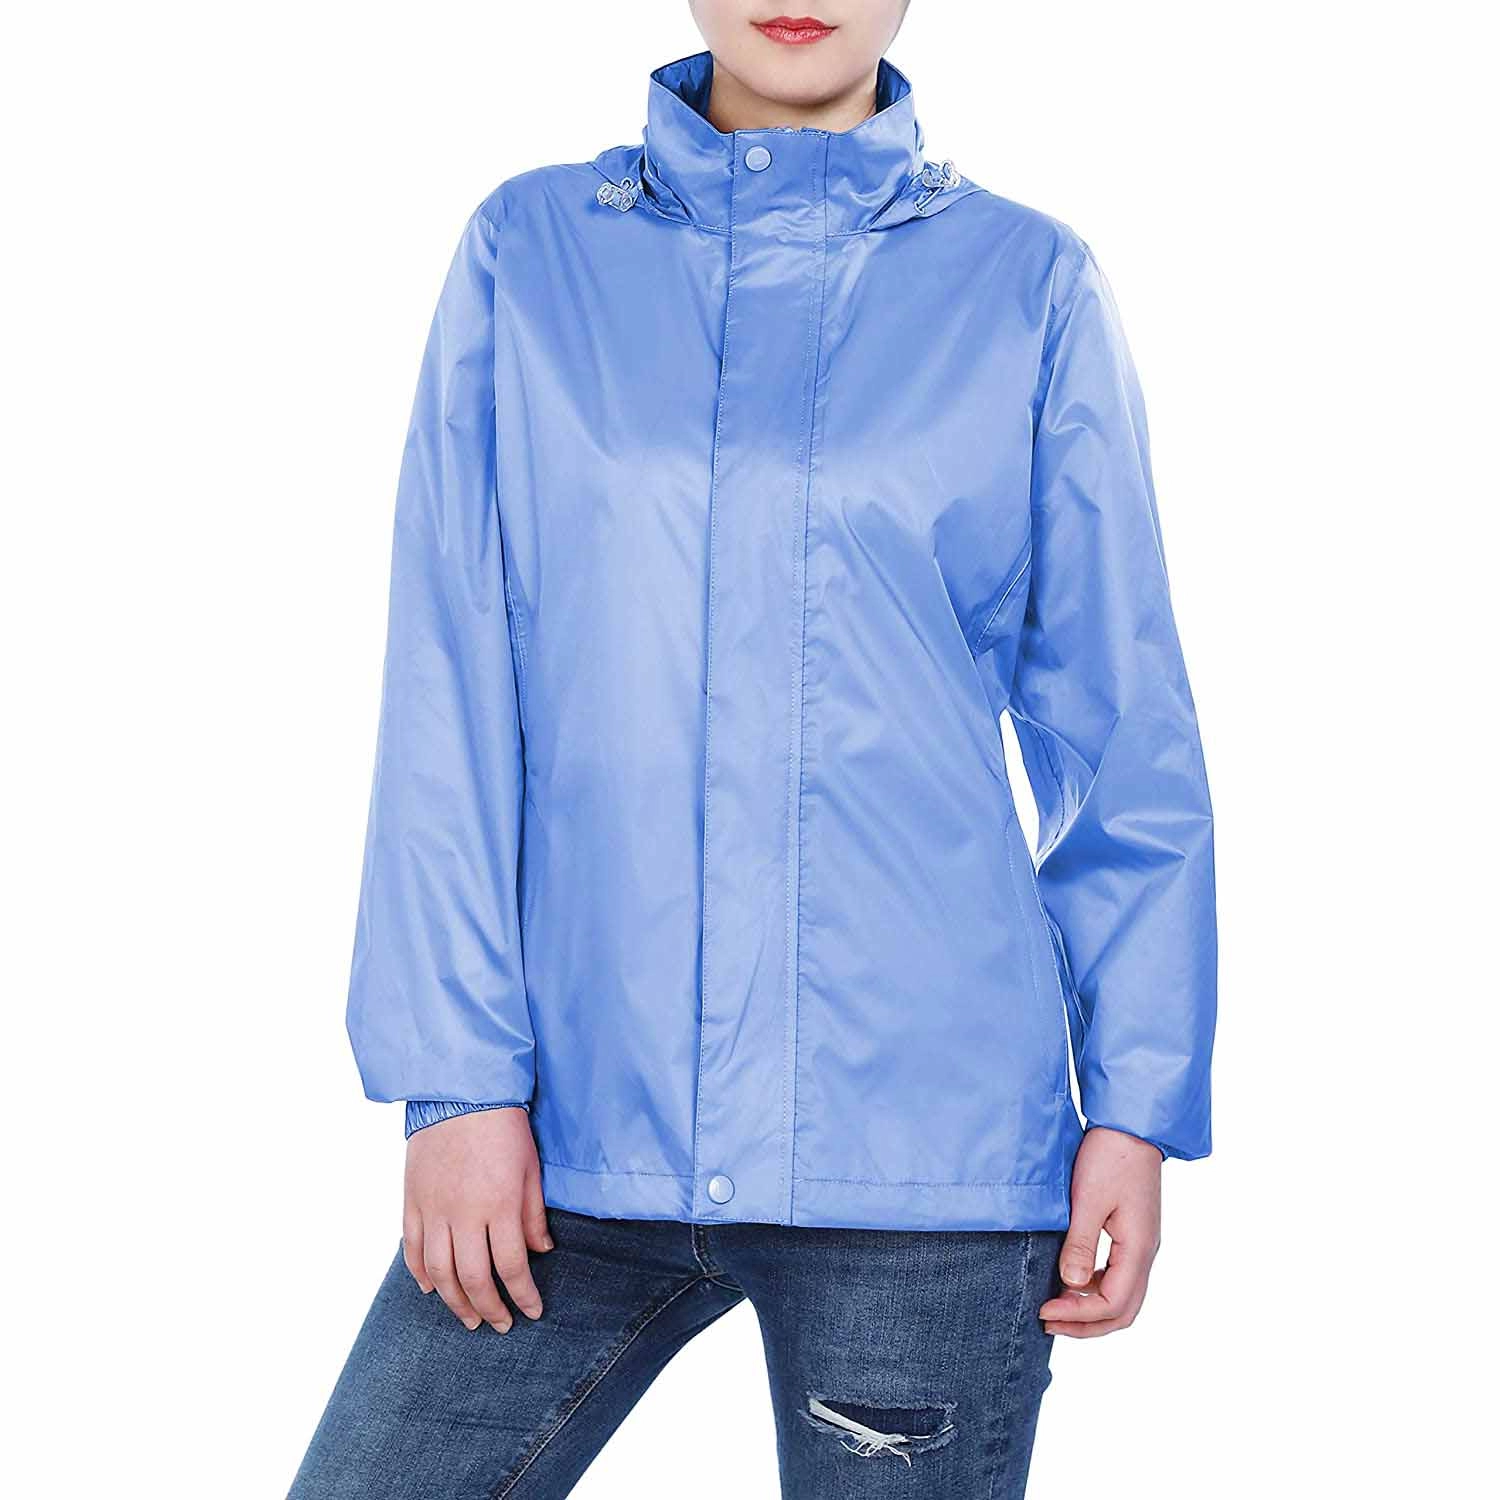 Women's Lightweight Raincoat Packable Rain Jacket Waterproof Raincoat with Hood Active Outdoor Windbreaker